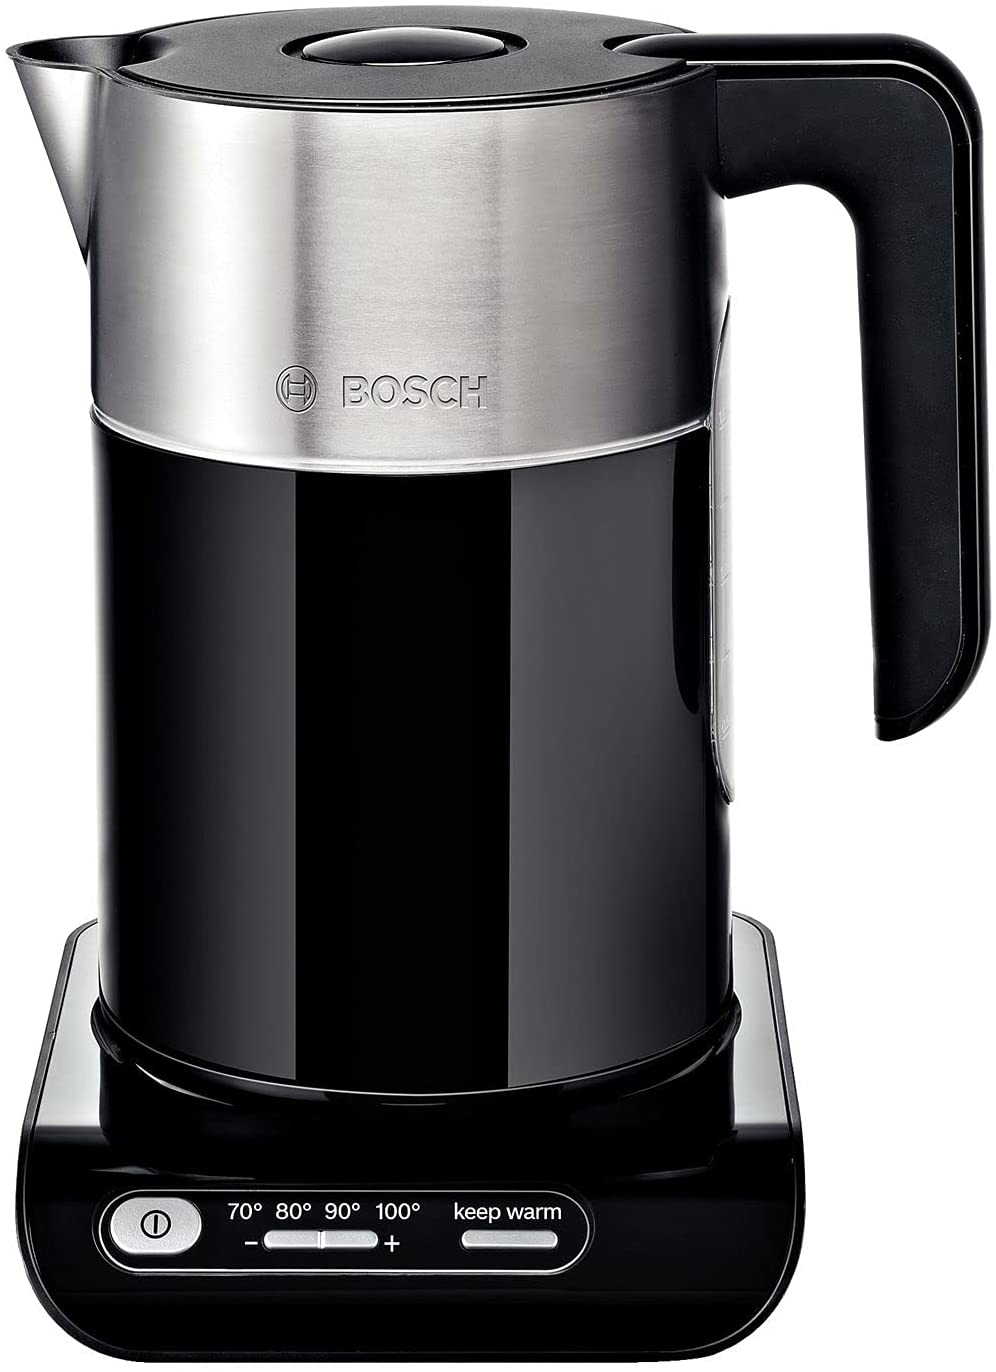 Bosch Styline TWK8613 - kettle - black